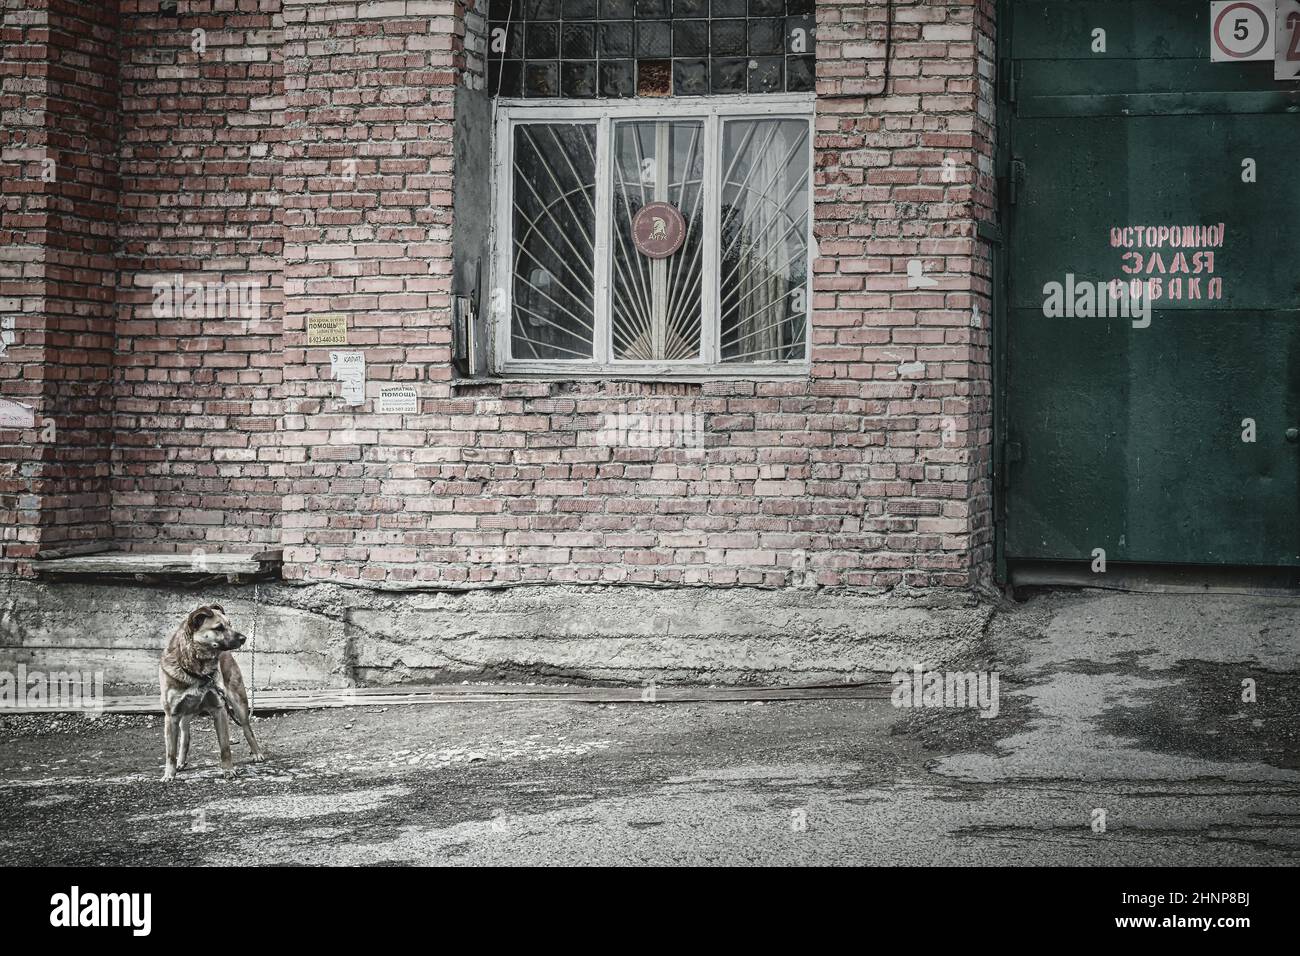 15th mai 2016, Russie, chien dans la rue Banque D'Images